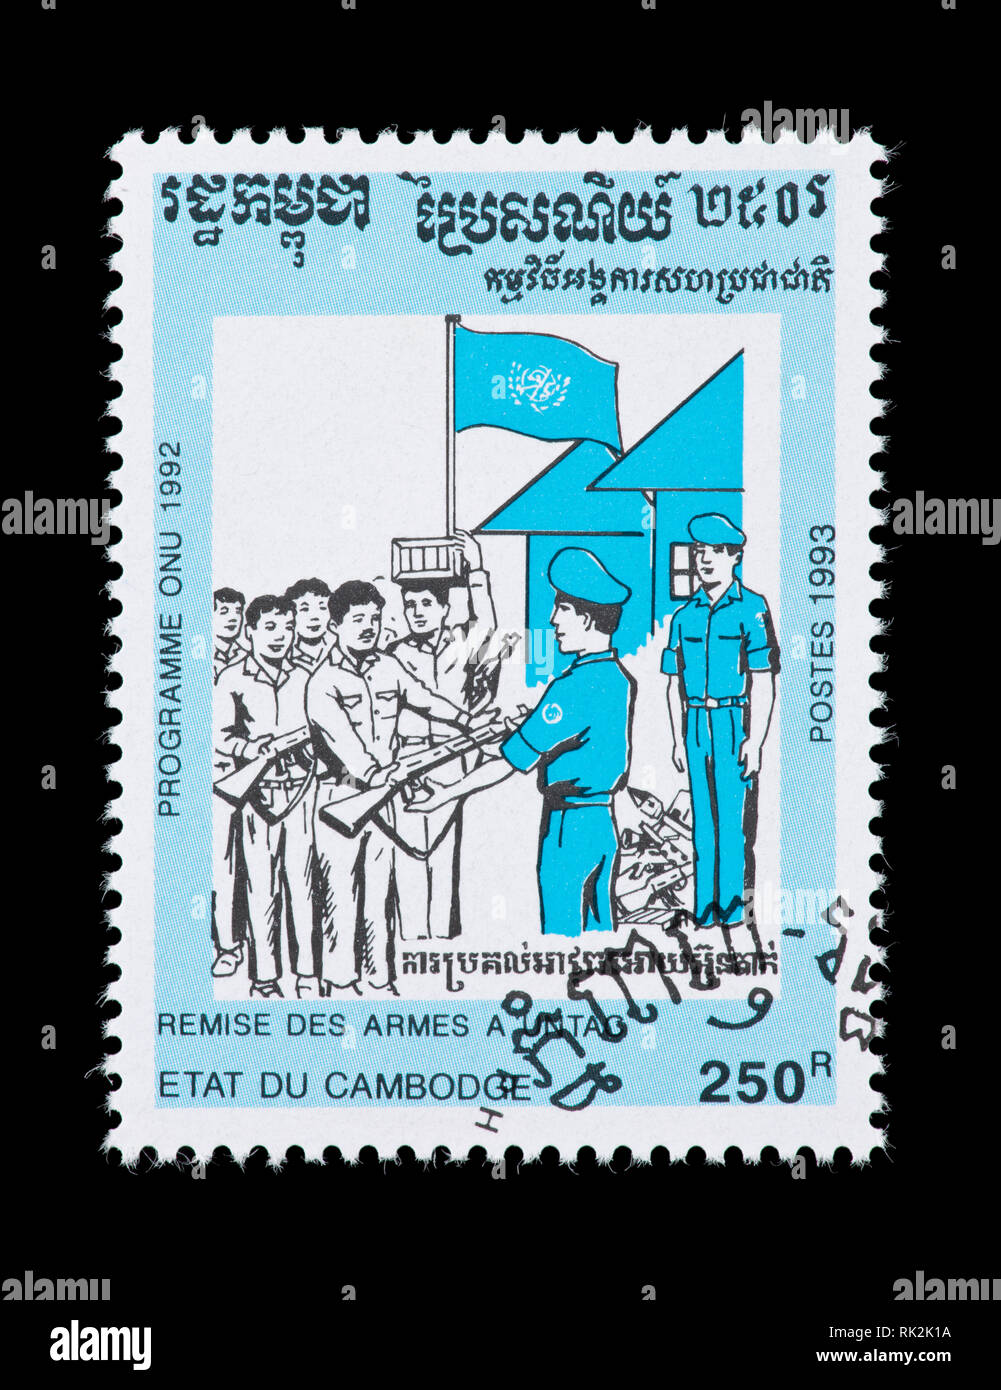 Briefmarke aus Kambodscha, die Truppen Übergabe von Waffen zu den Vereinten Nationen, der UN-Übergangsverwaltung in Kambodscha (UNTAC) Stockfoto